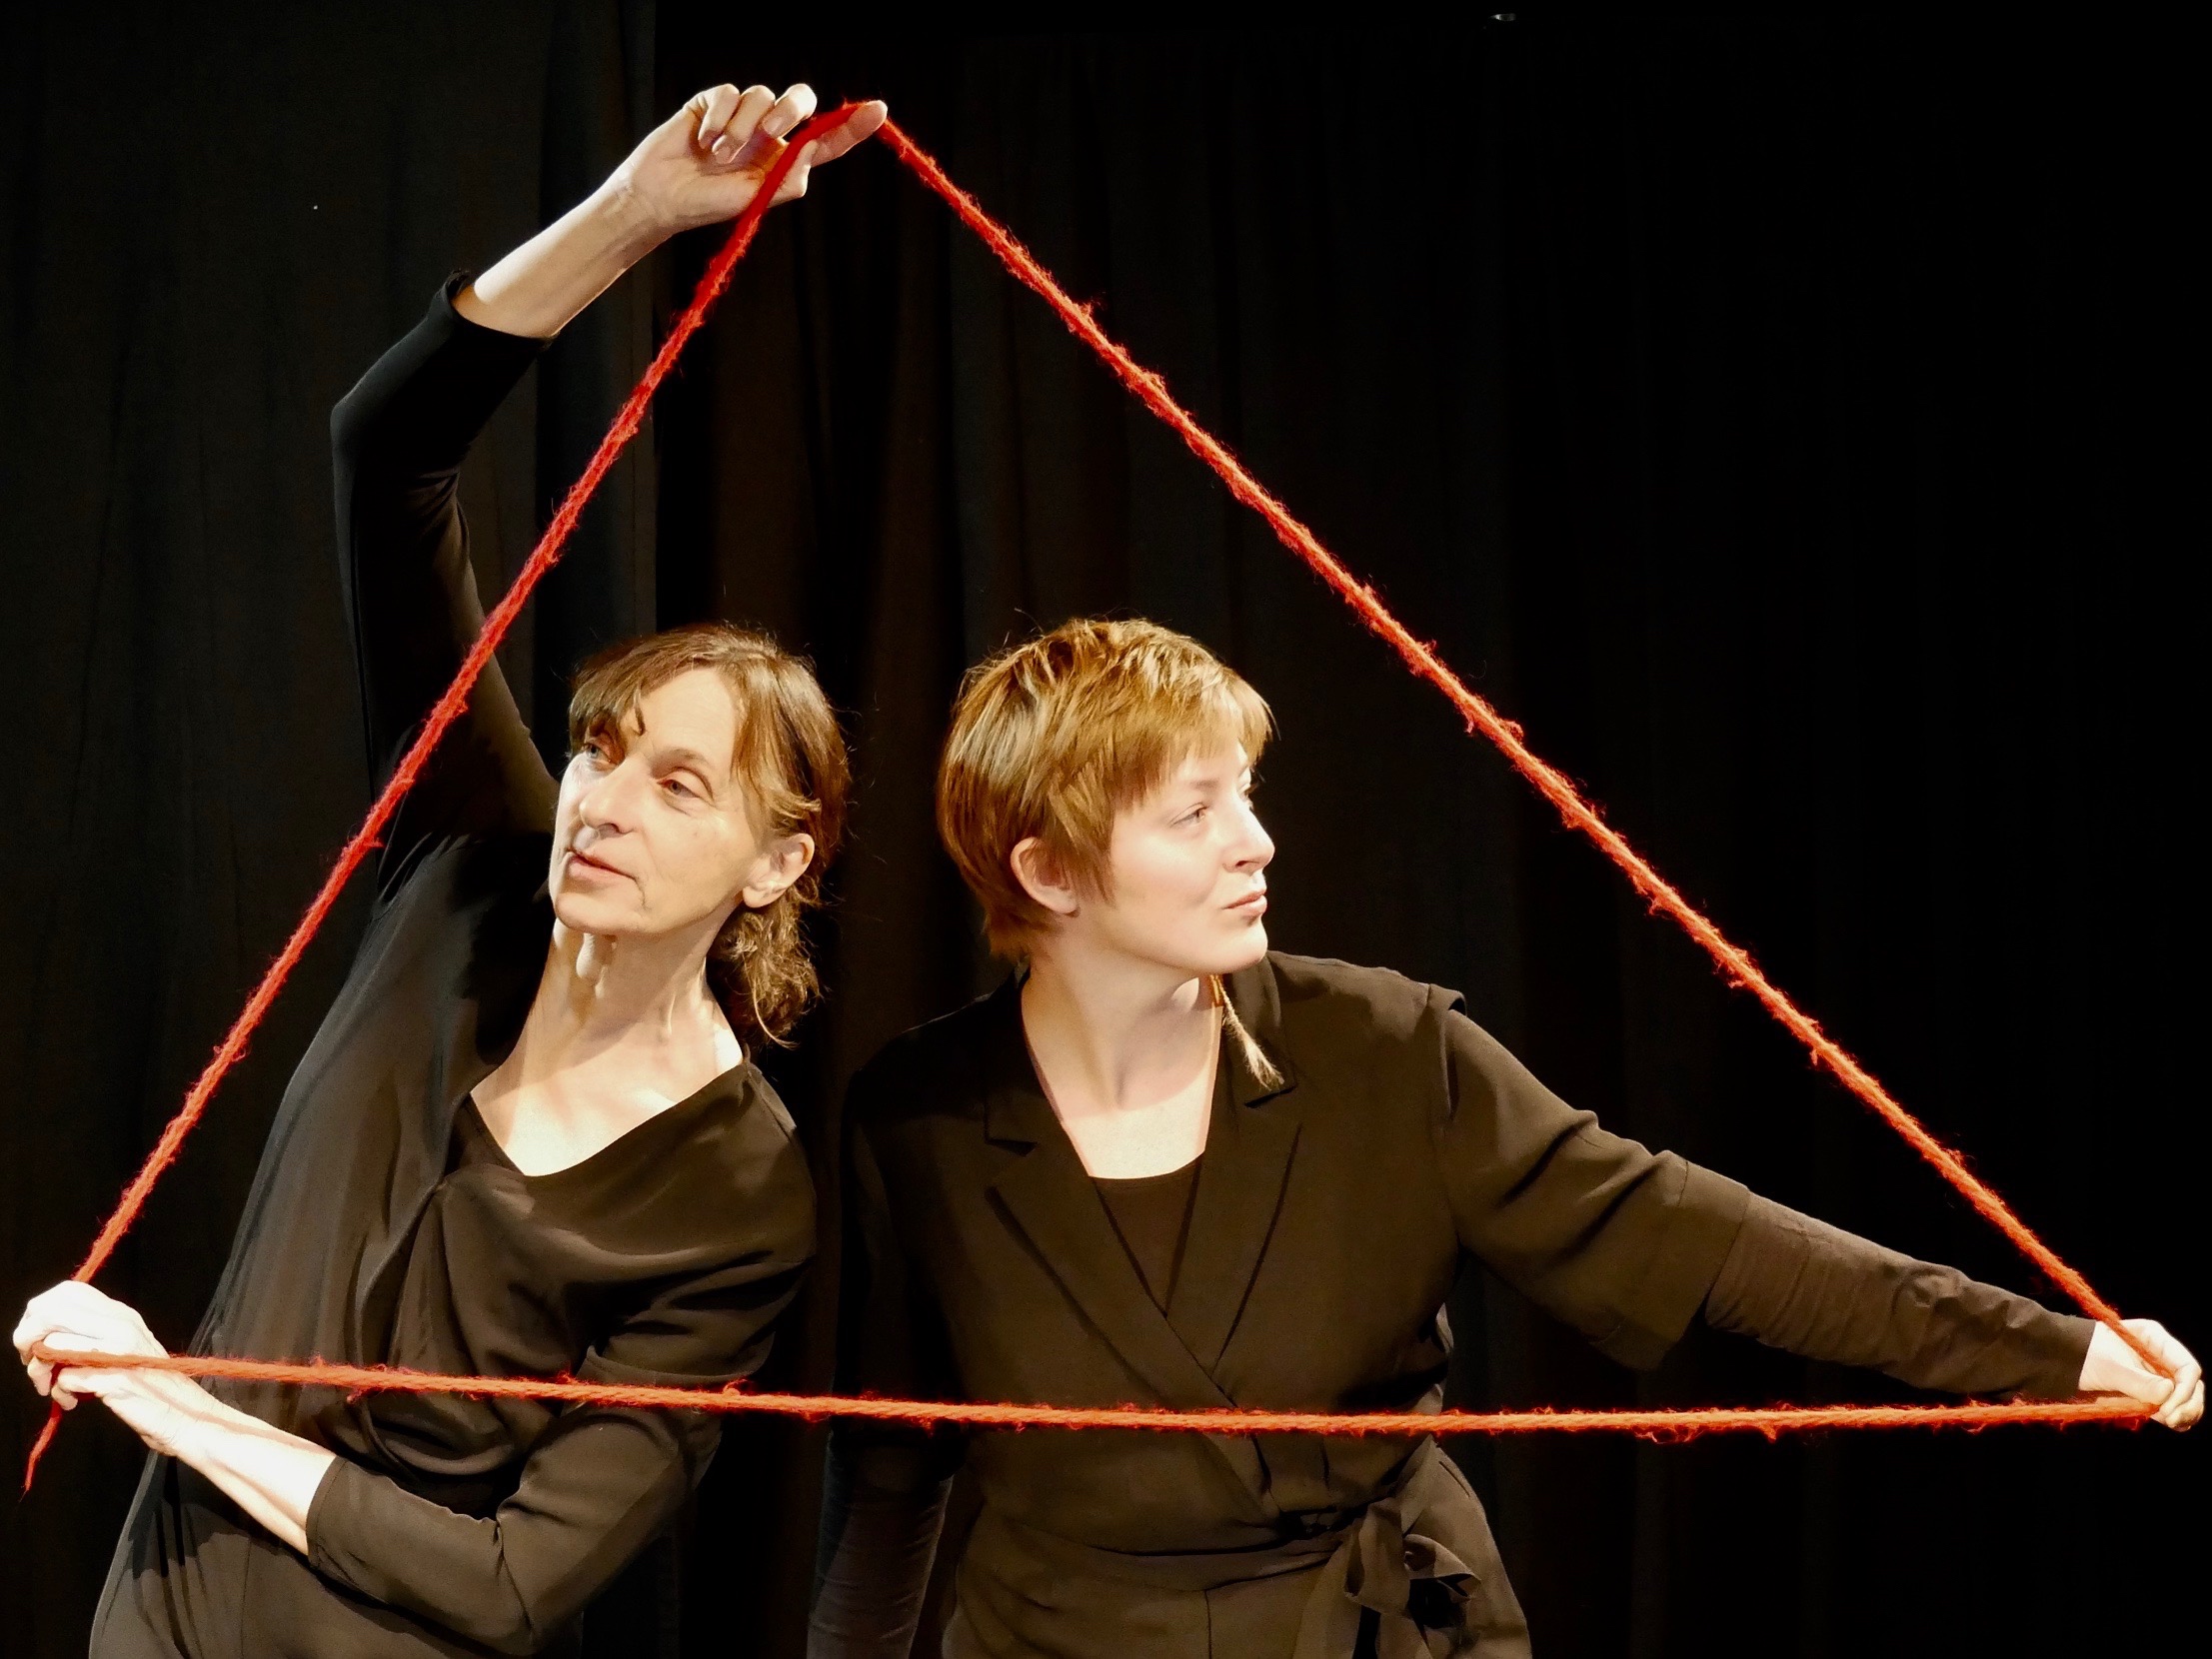 Zwei Spielerinnen, die einen dicken roten Faden wie ein Dreieck formen und um sich herum halten.